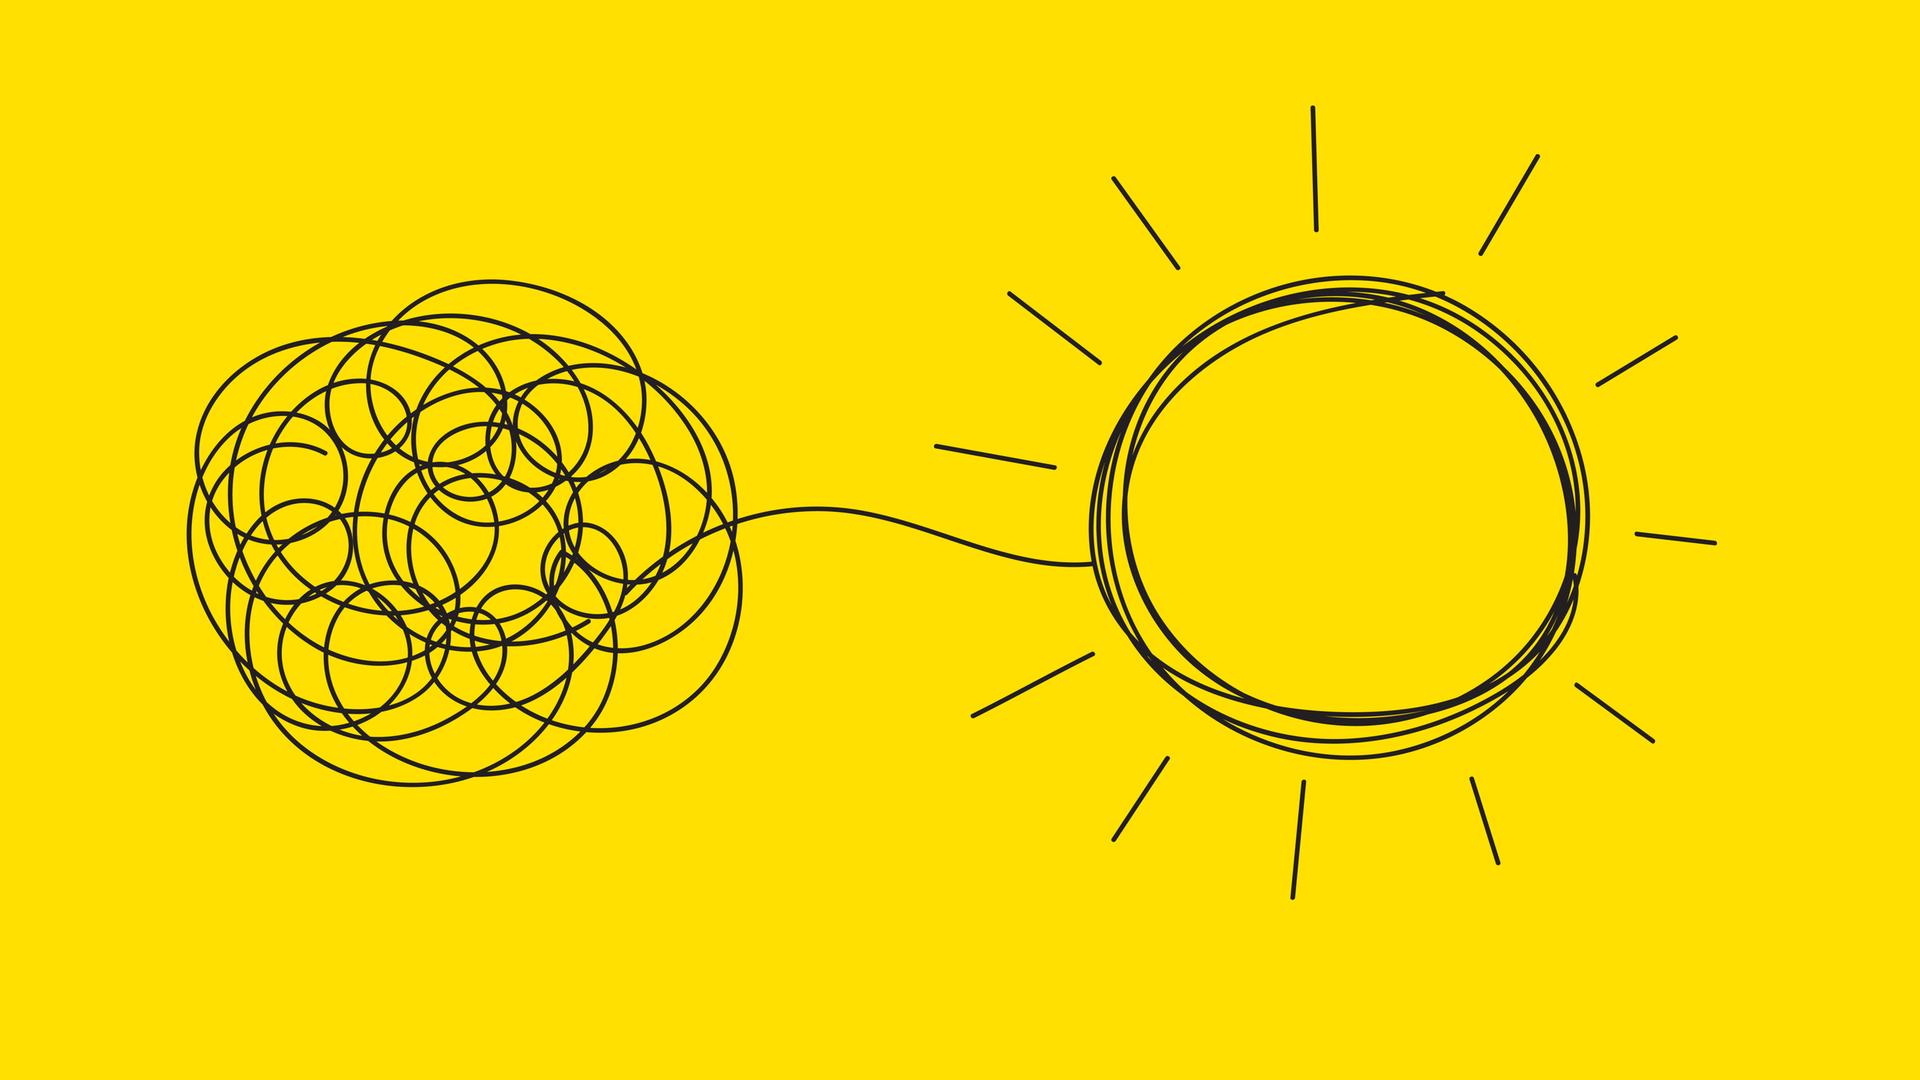 Auf einem gelben Hintergrund ist eine schwarze Strichzeichnung abgebildet. Sie zeigt ein verworrenes Knäuel auf der linken Seite, das sich auf der rechten Seite zu einer Sonne entwirrt.